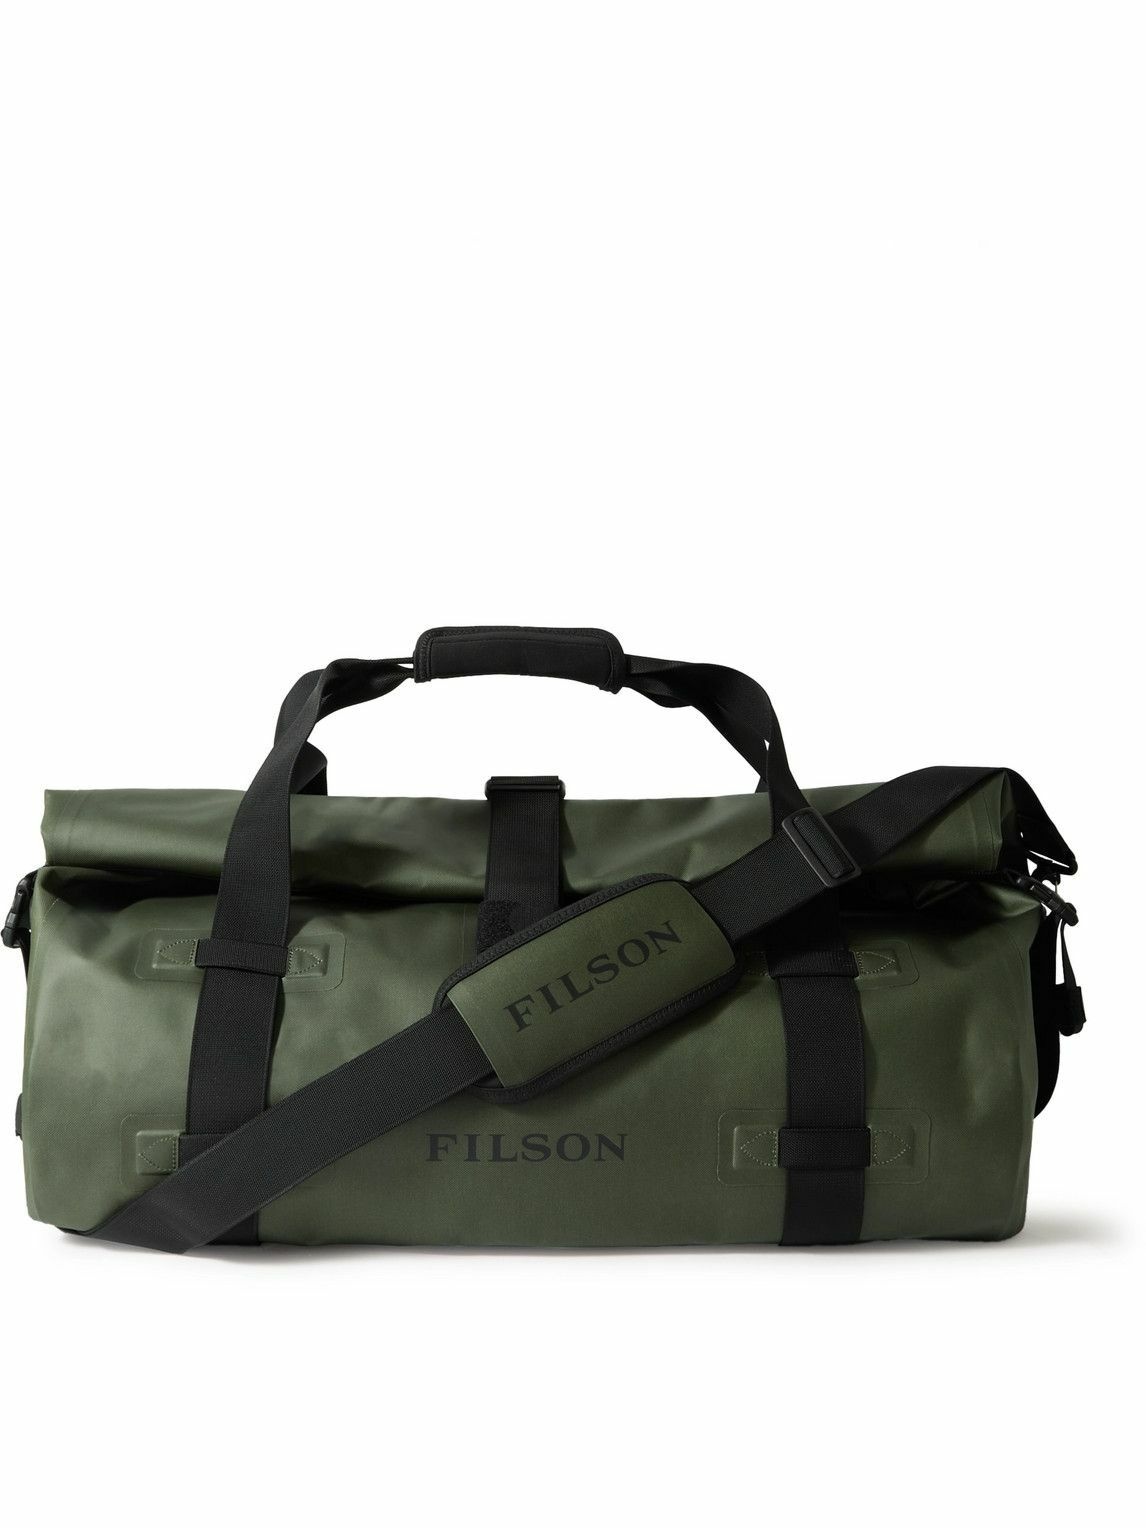 Photo: Filson - Dry Shell Duffle Bag